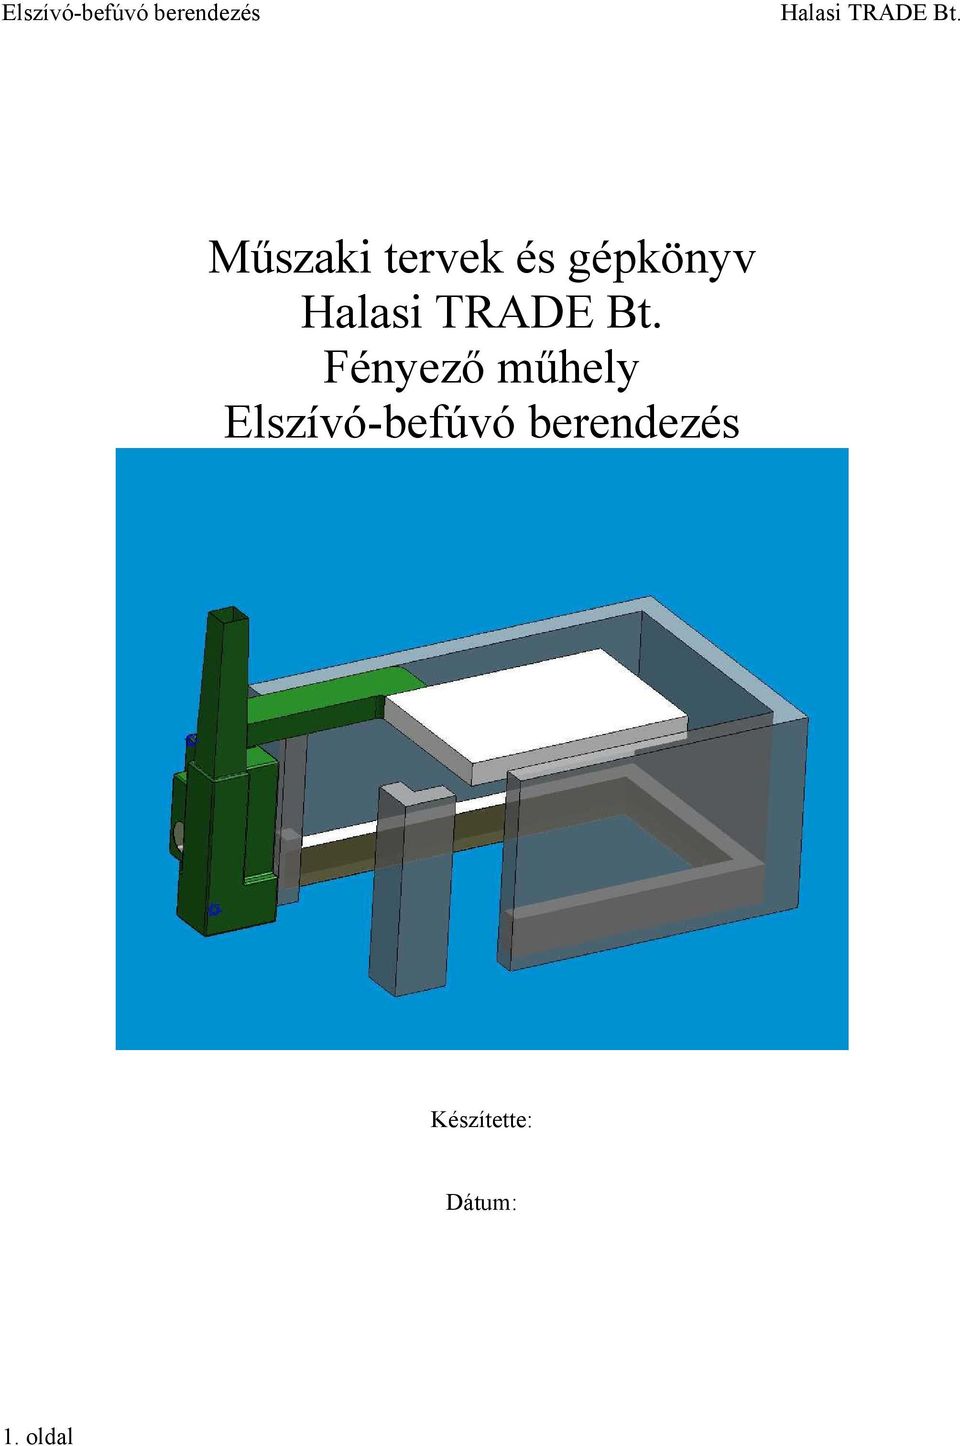 Műszaki tervek és gépkönyv. Halasi TRADE Bt. Fényező műhely. Elszívó-befúvó  berendezés - PDF Ingyenes letöltés